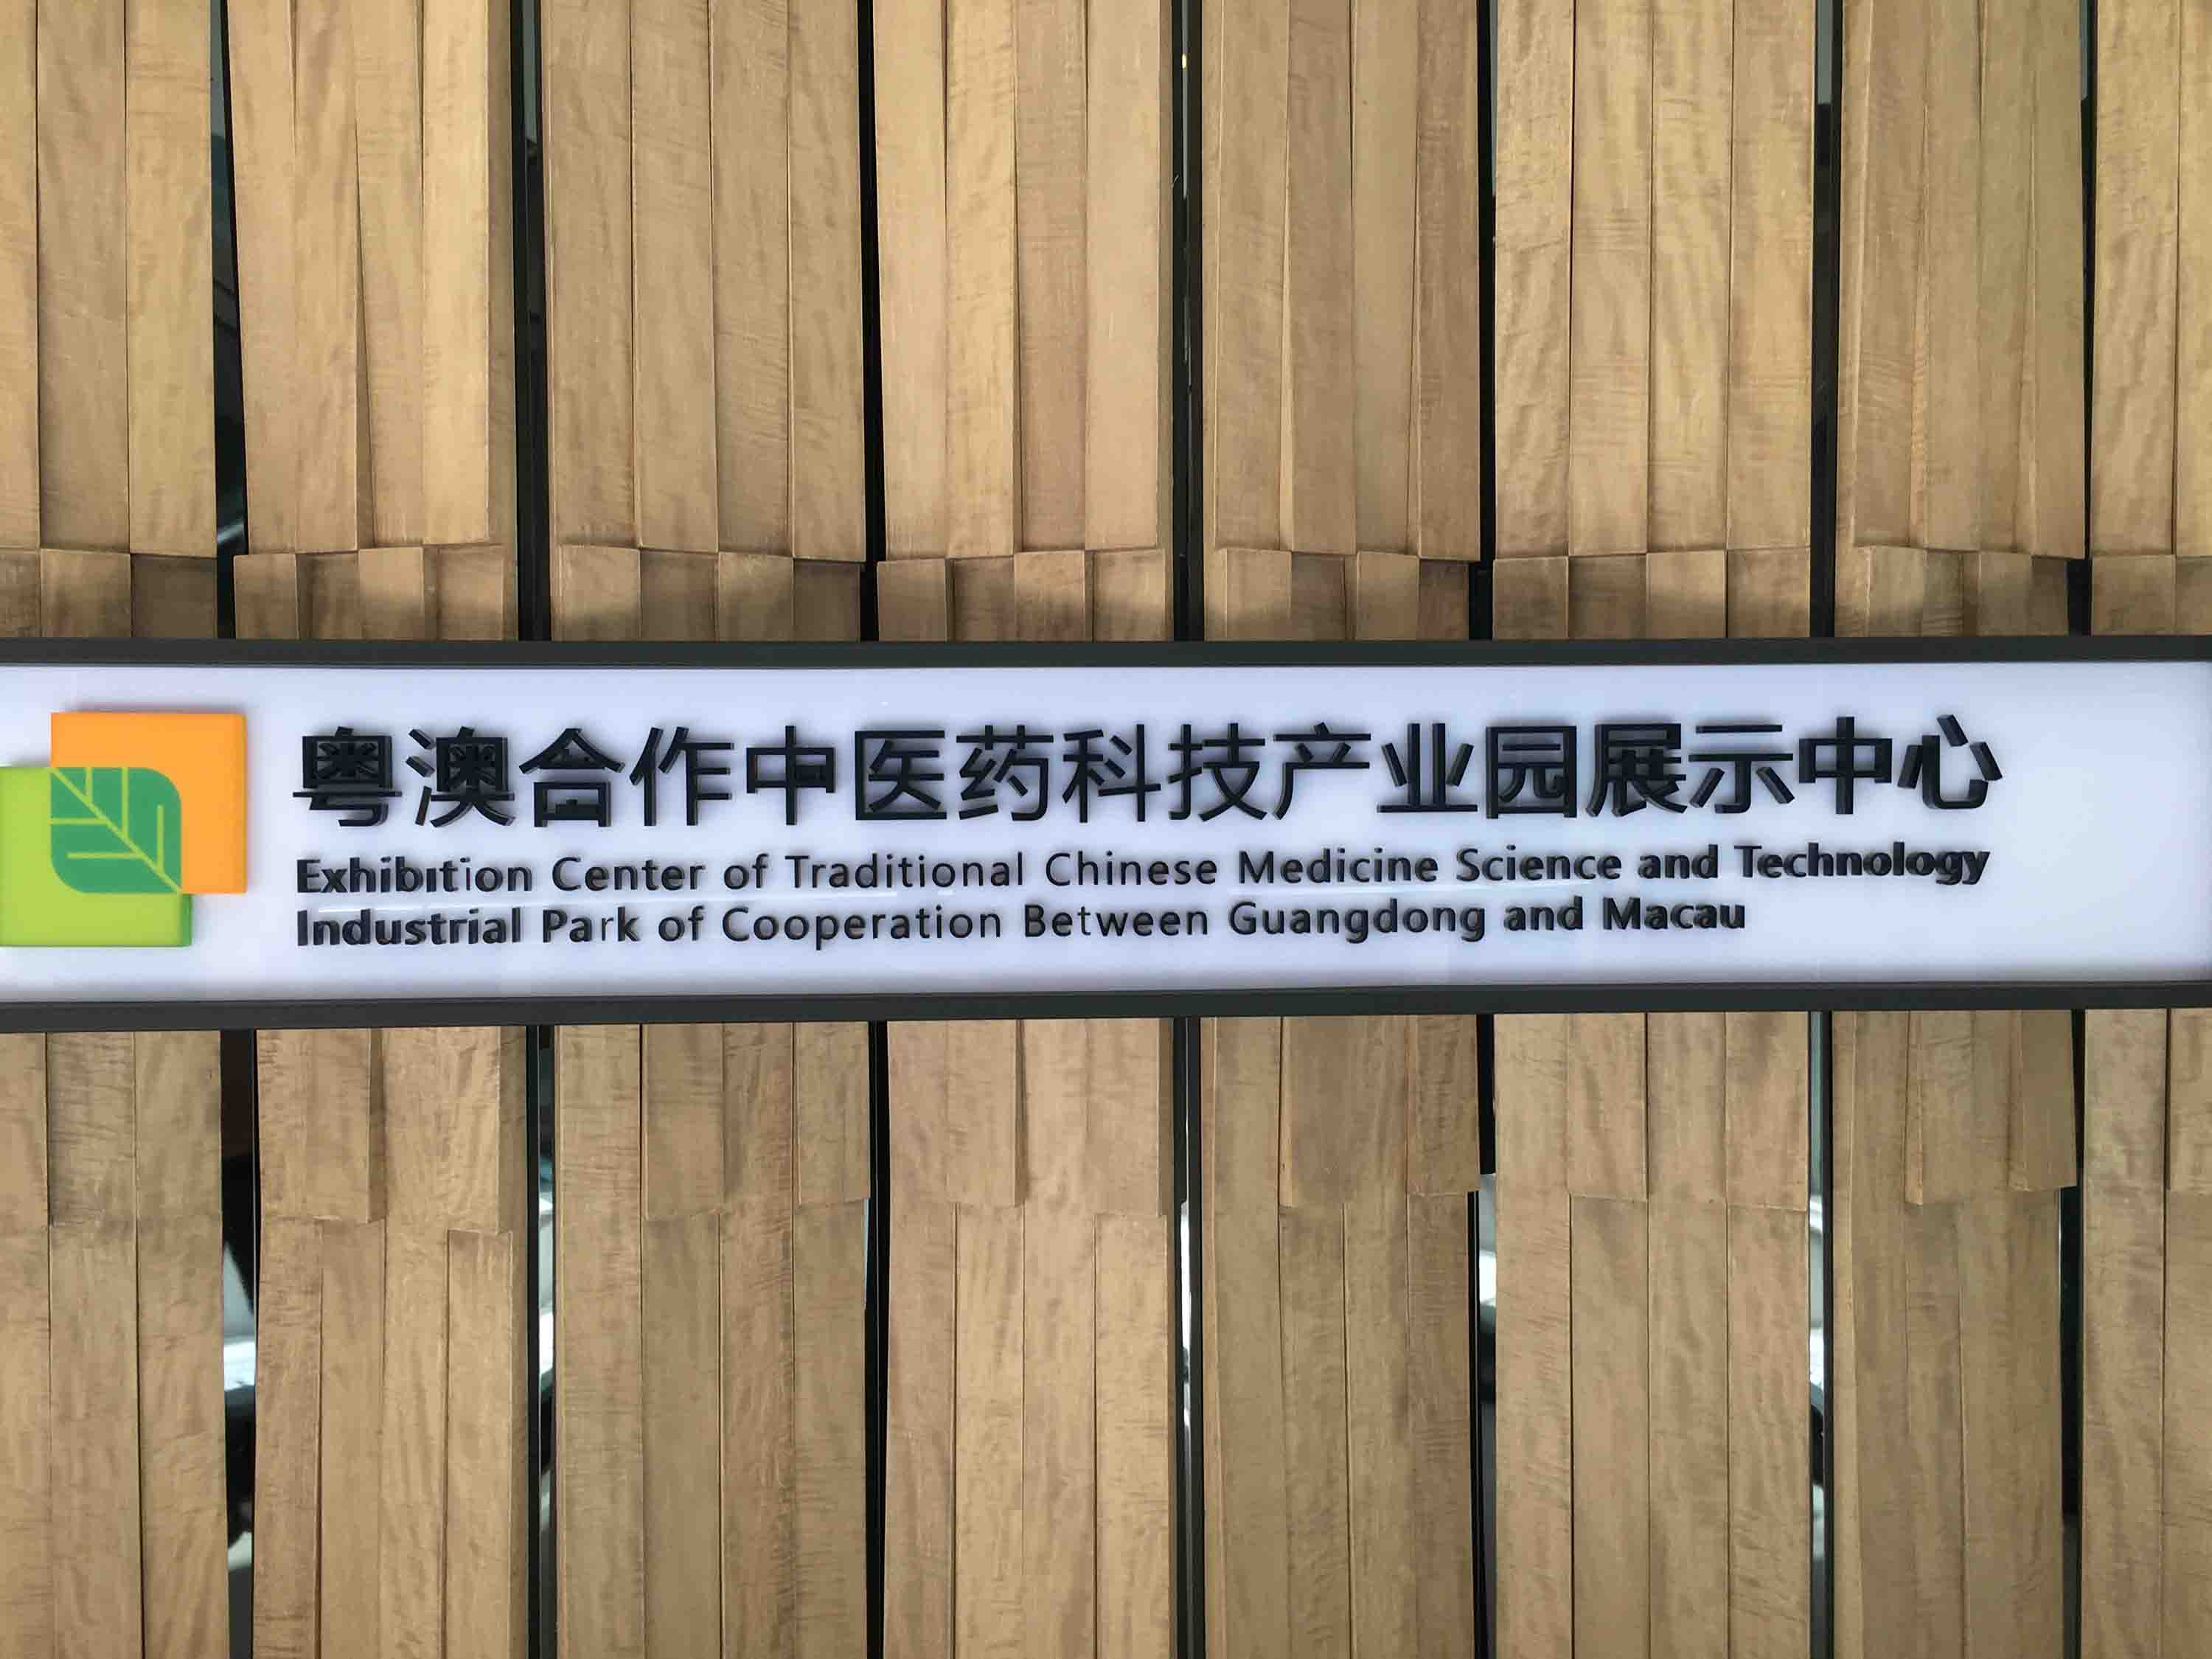 粤澳合作中医药科技产业园展示中心